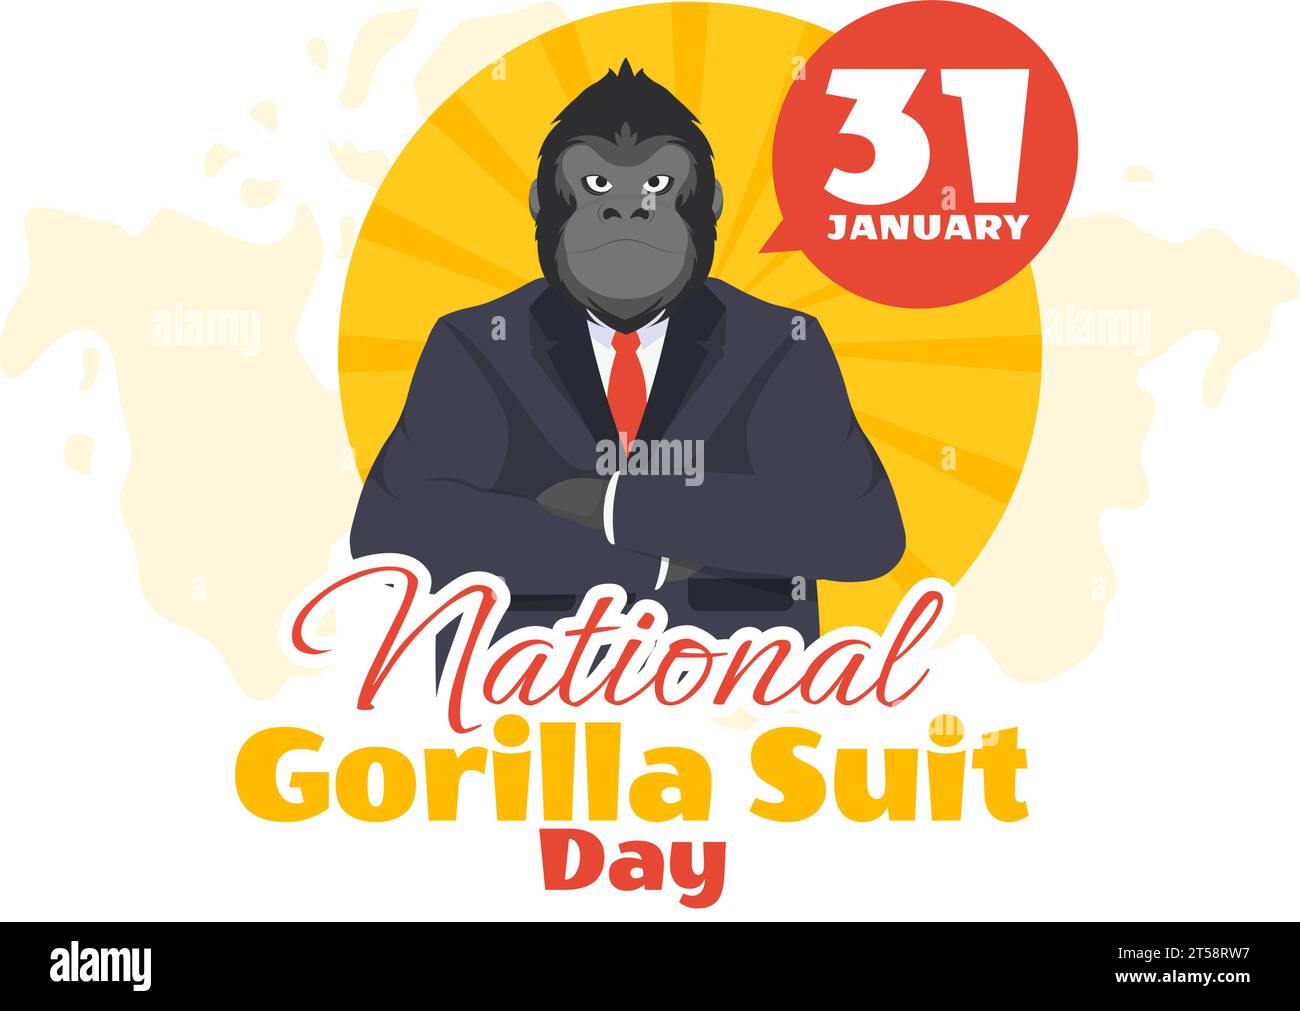 National Gorilla suit jour Vector Illustration le 31 janvier avec a la tête d'un gorille est habillé soigneusement dans un costume et carte du monde en arrière-plan Illustration de Vecteur